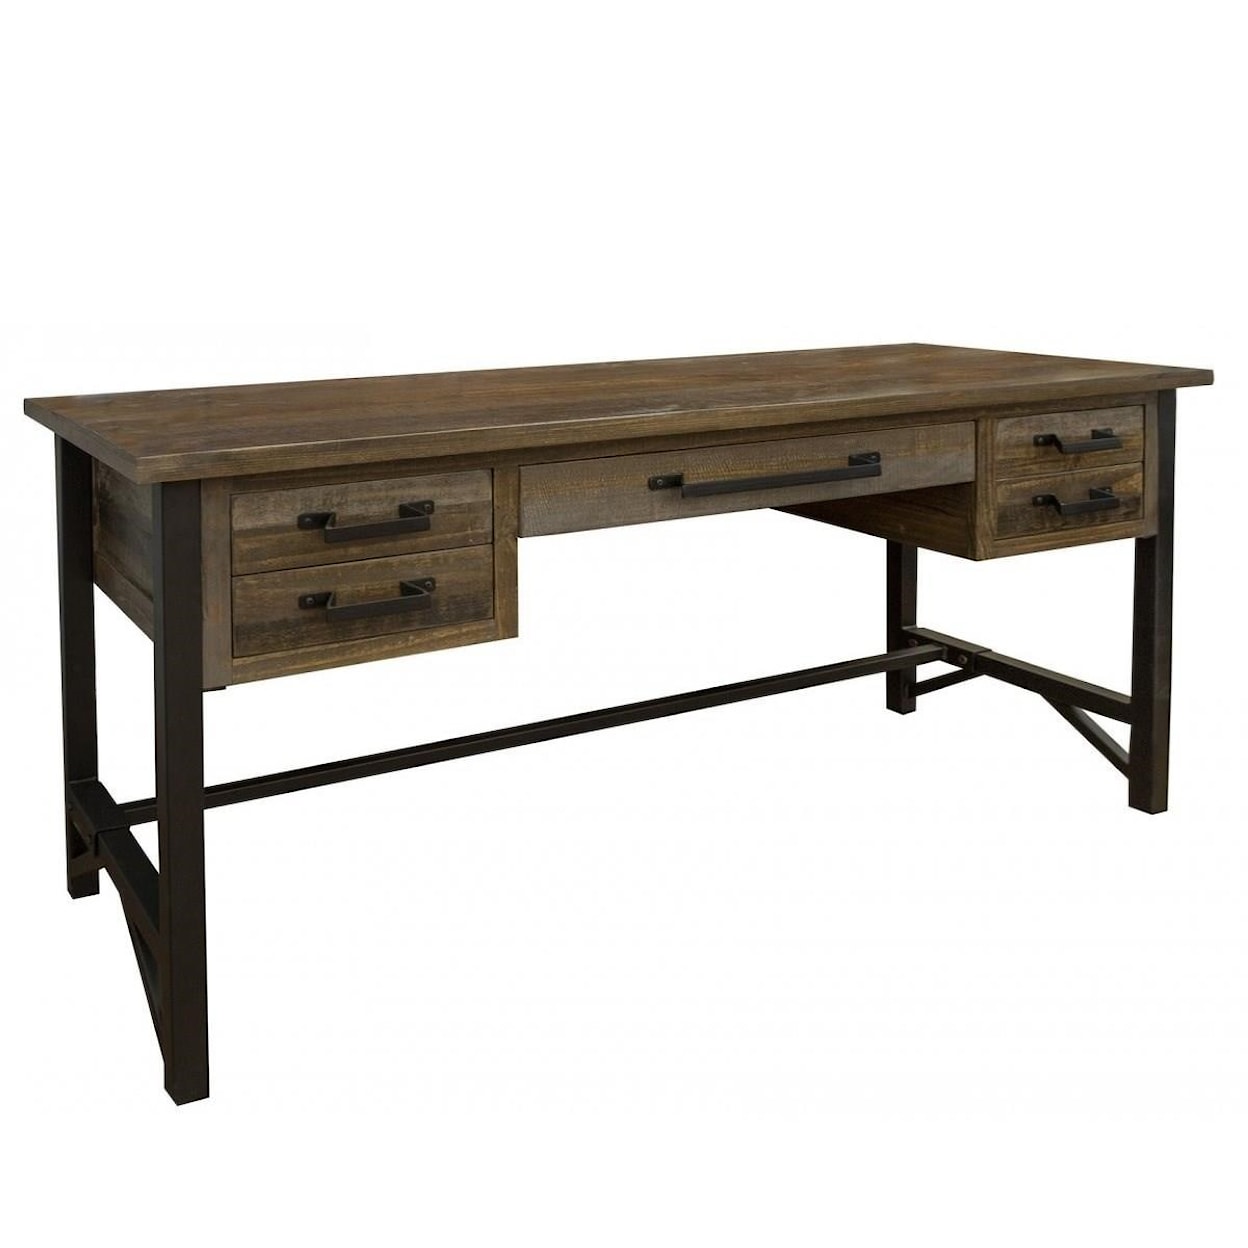 International Furniture Direct Loft 5 Drawer Desk